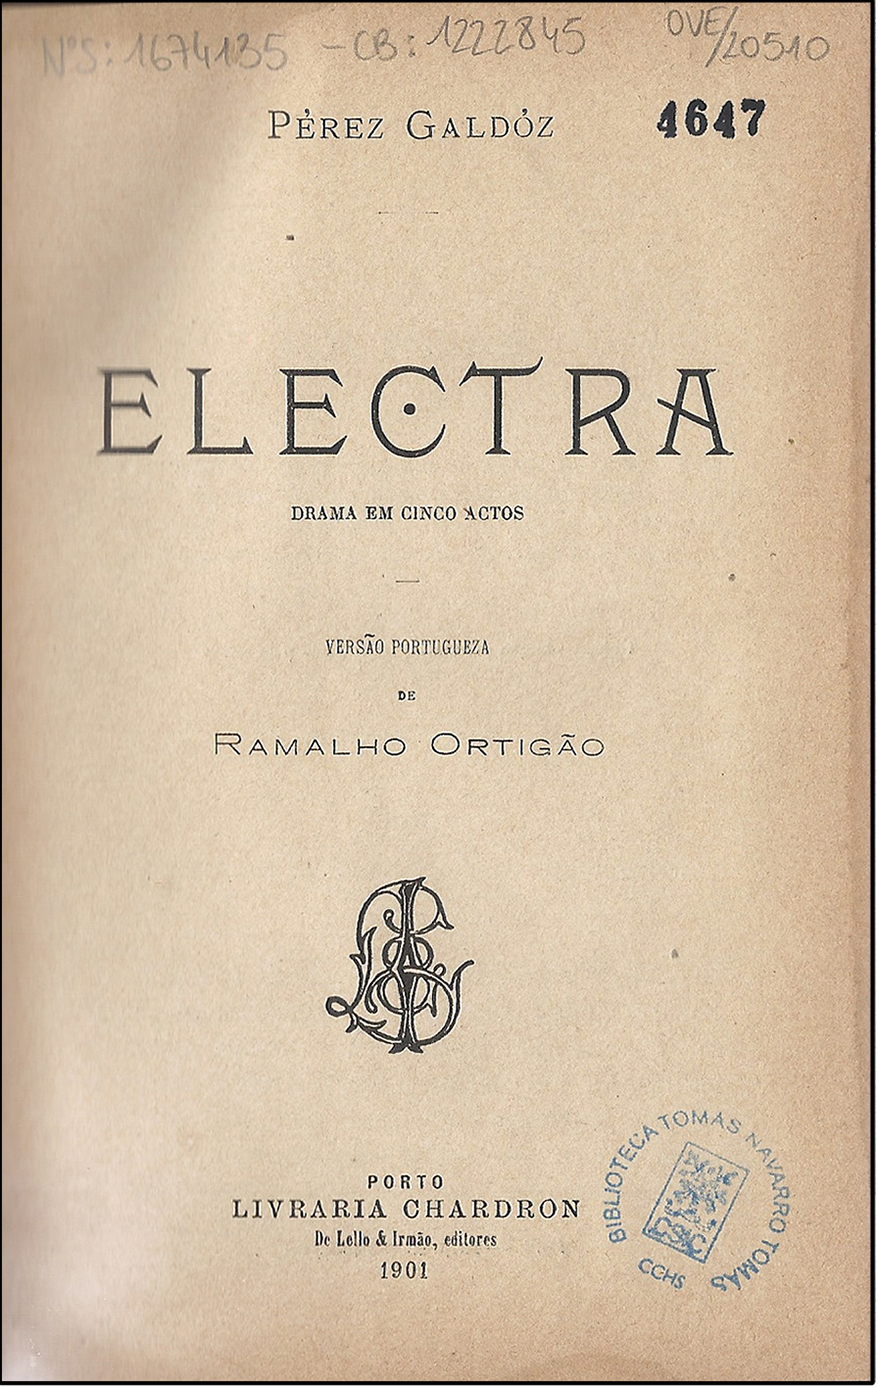 Pérez Galdós, Benito, and Ramalho Ortigao. Electra : drama em cinco actos. Porto: Livraria Chardron, 1901. Print.